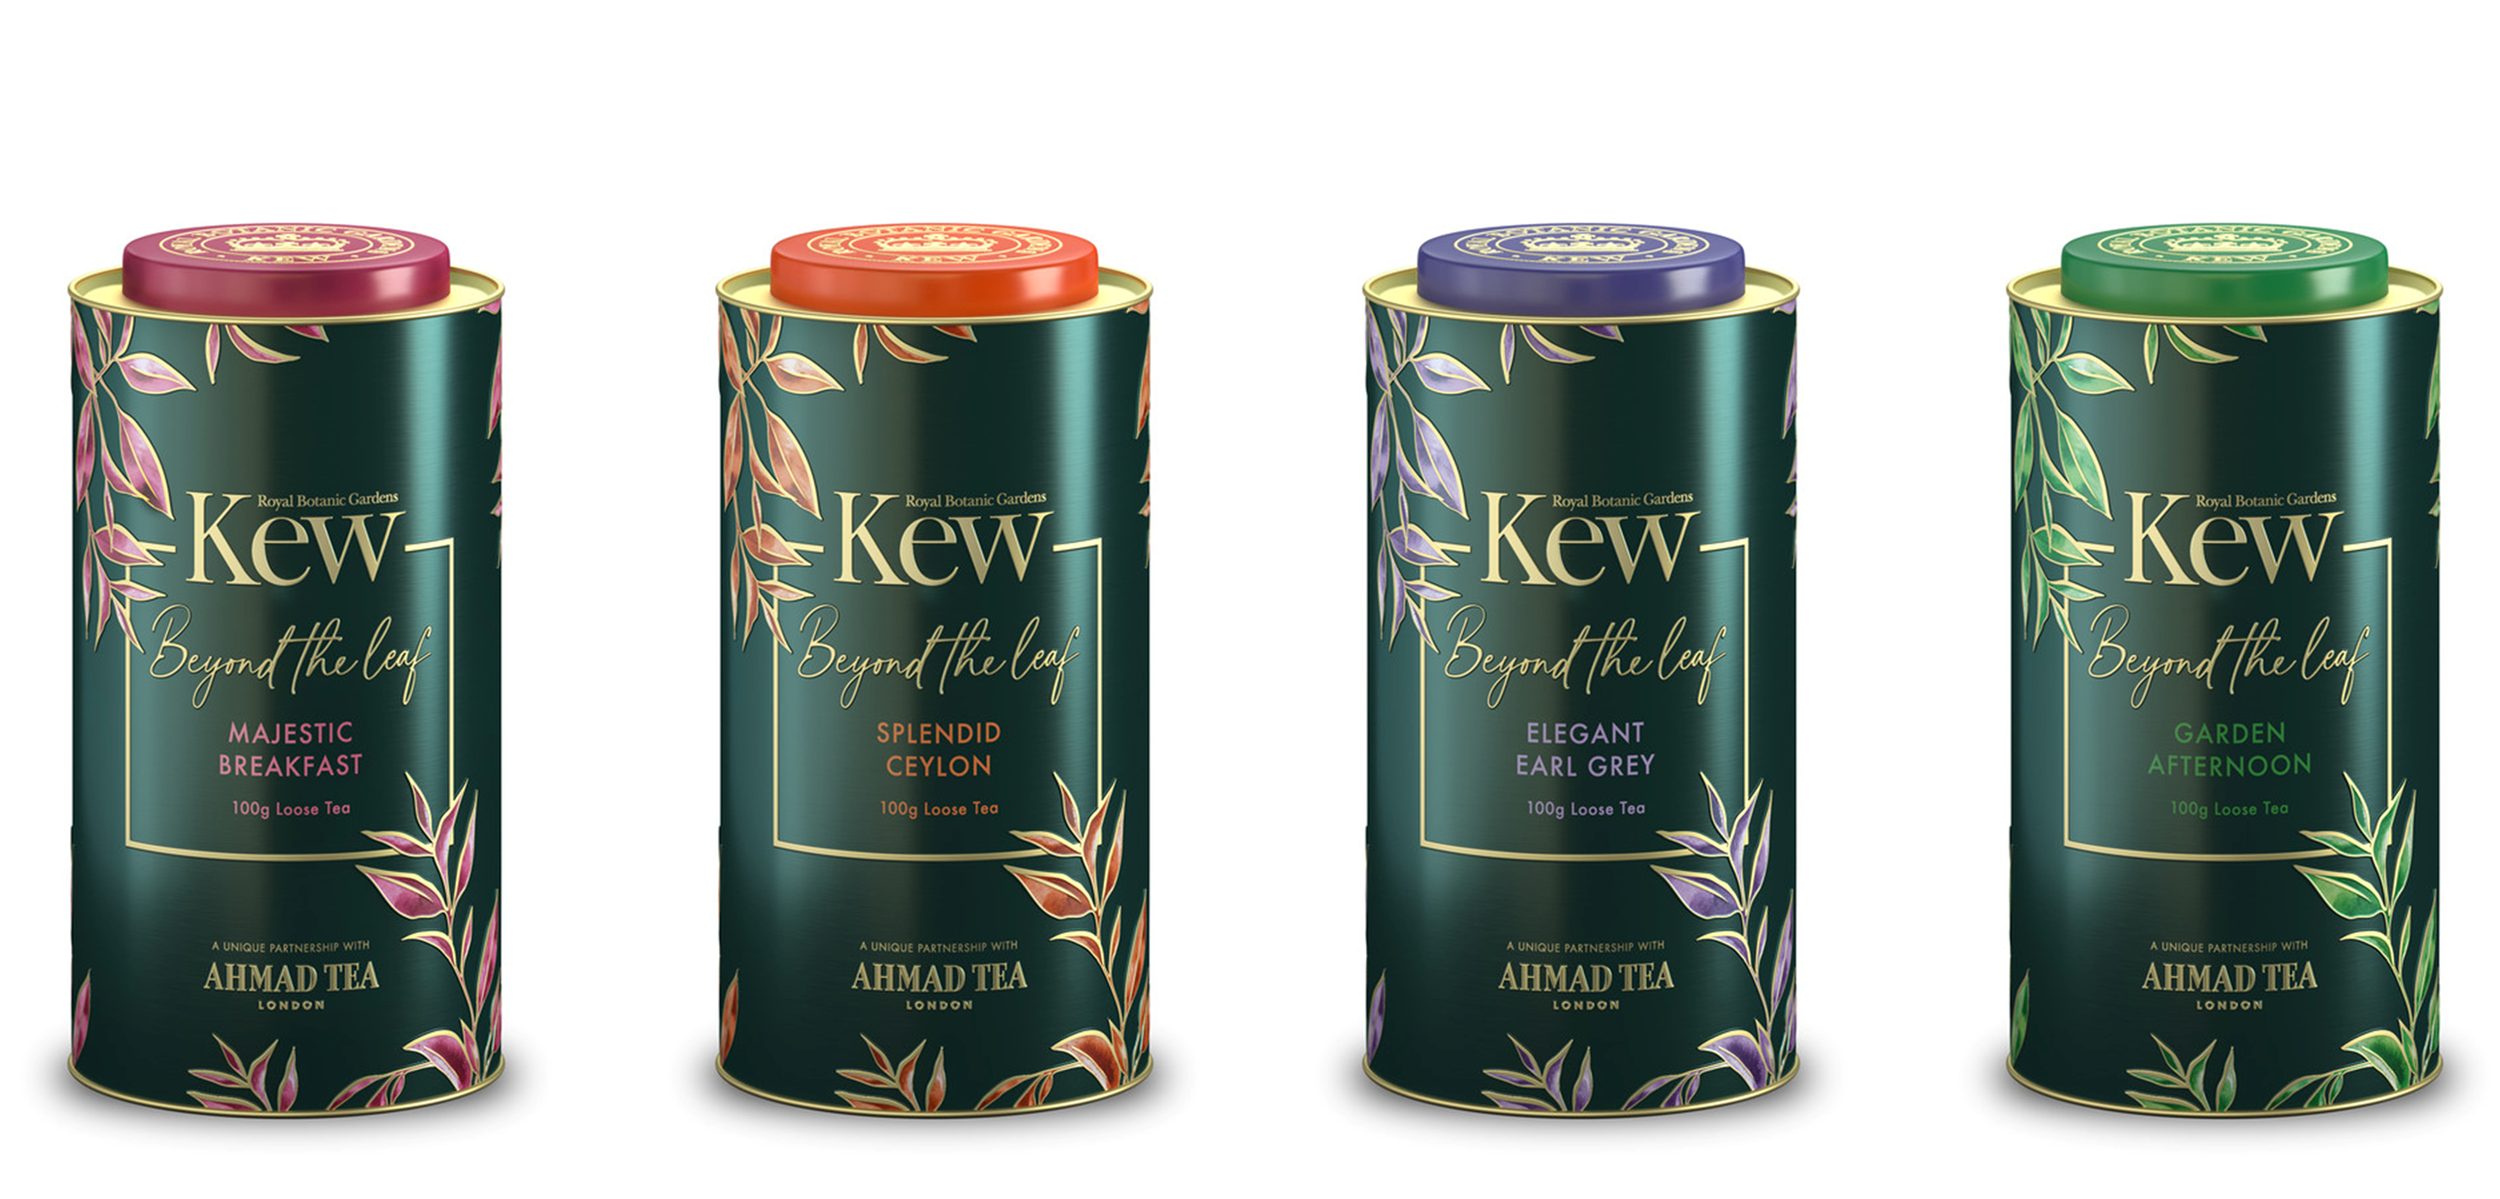 英国紅茶ブランド「AHMAD TEA」から
英国王立植物園「キューガーデン」との
コラボレーション商品が新発売！
～限定デザインのリーフティー缶4種～